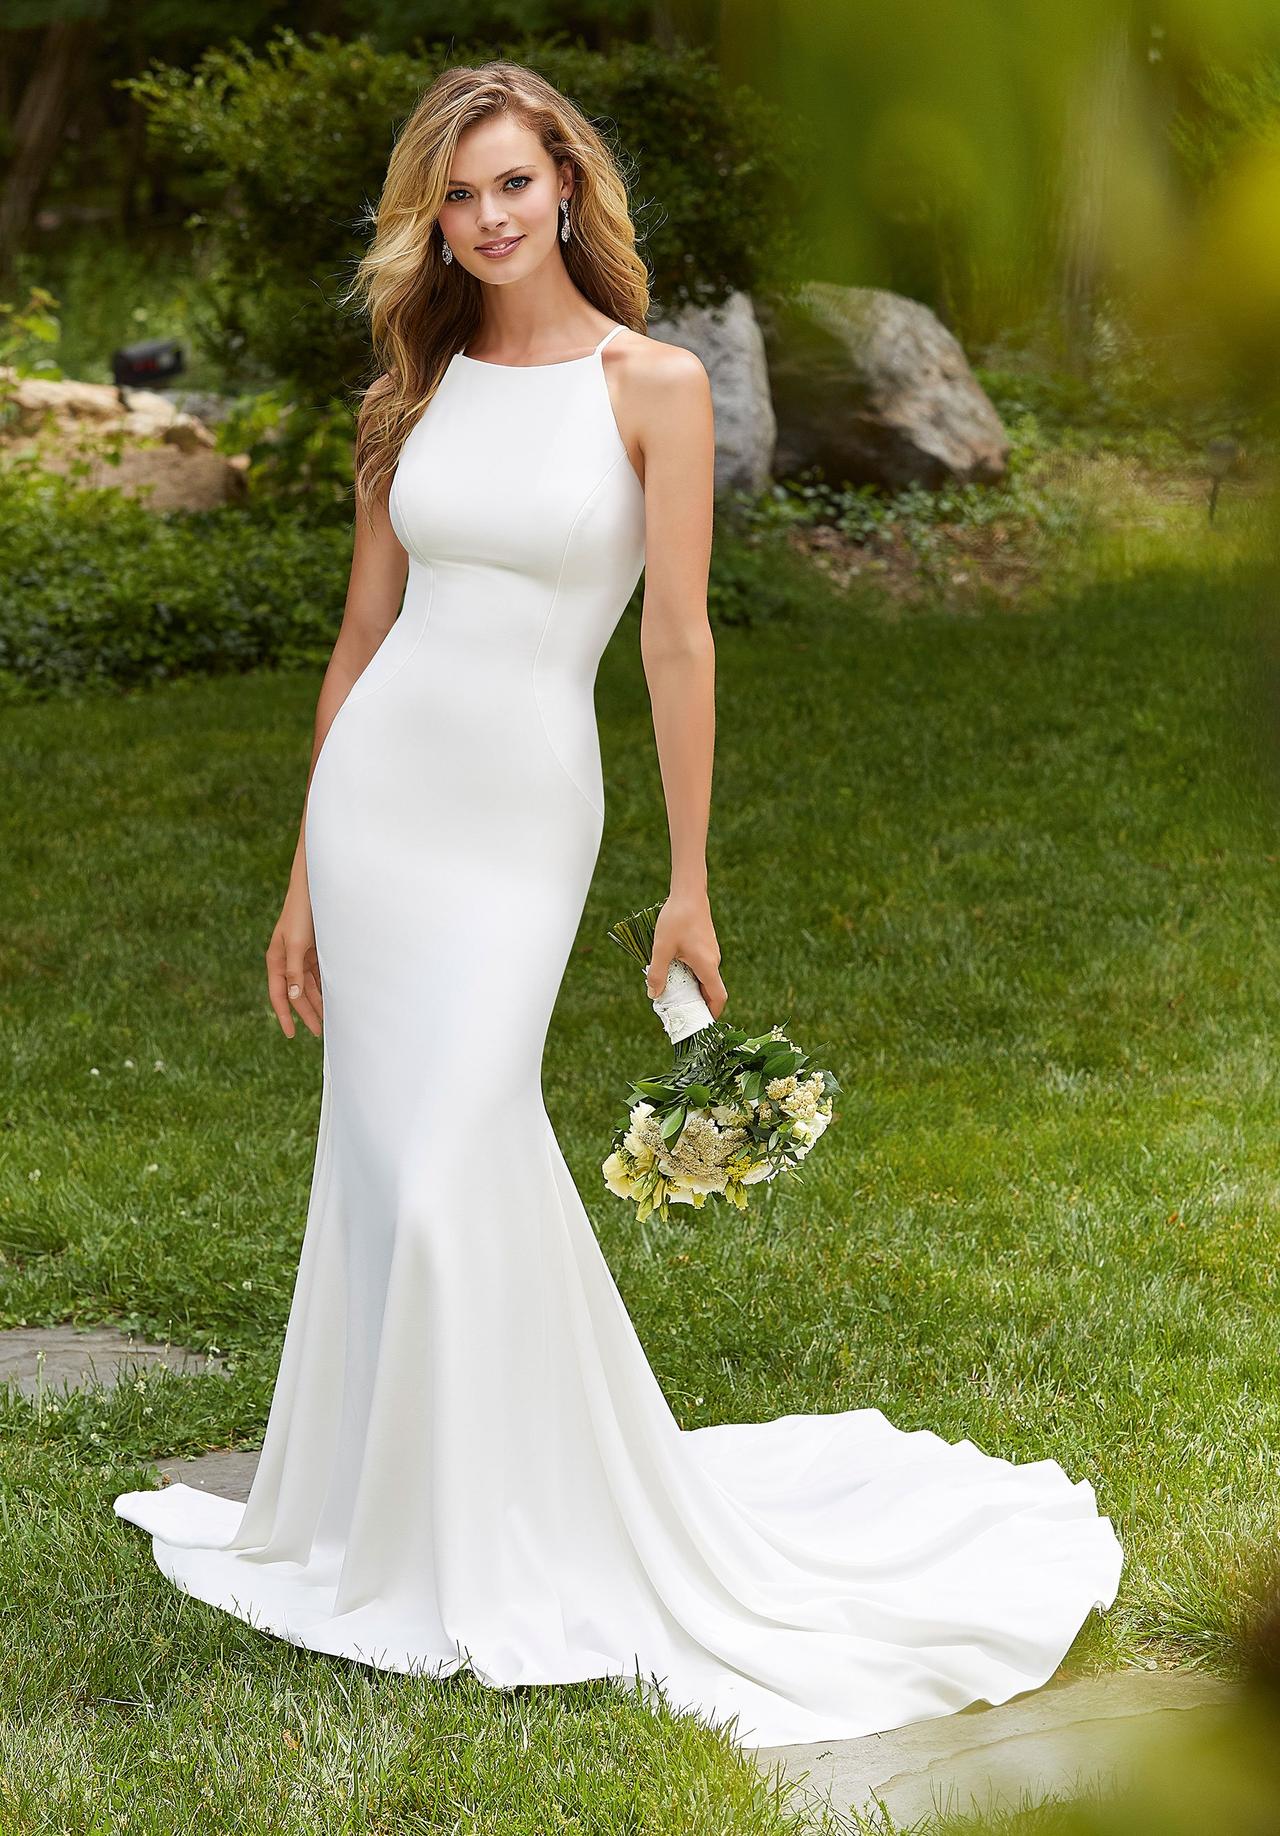 UK Sweetheart White/Ivory Plus Size Organza Wedding Dress Bridal Size UK 6-26 